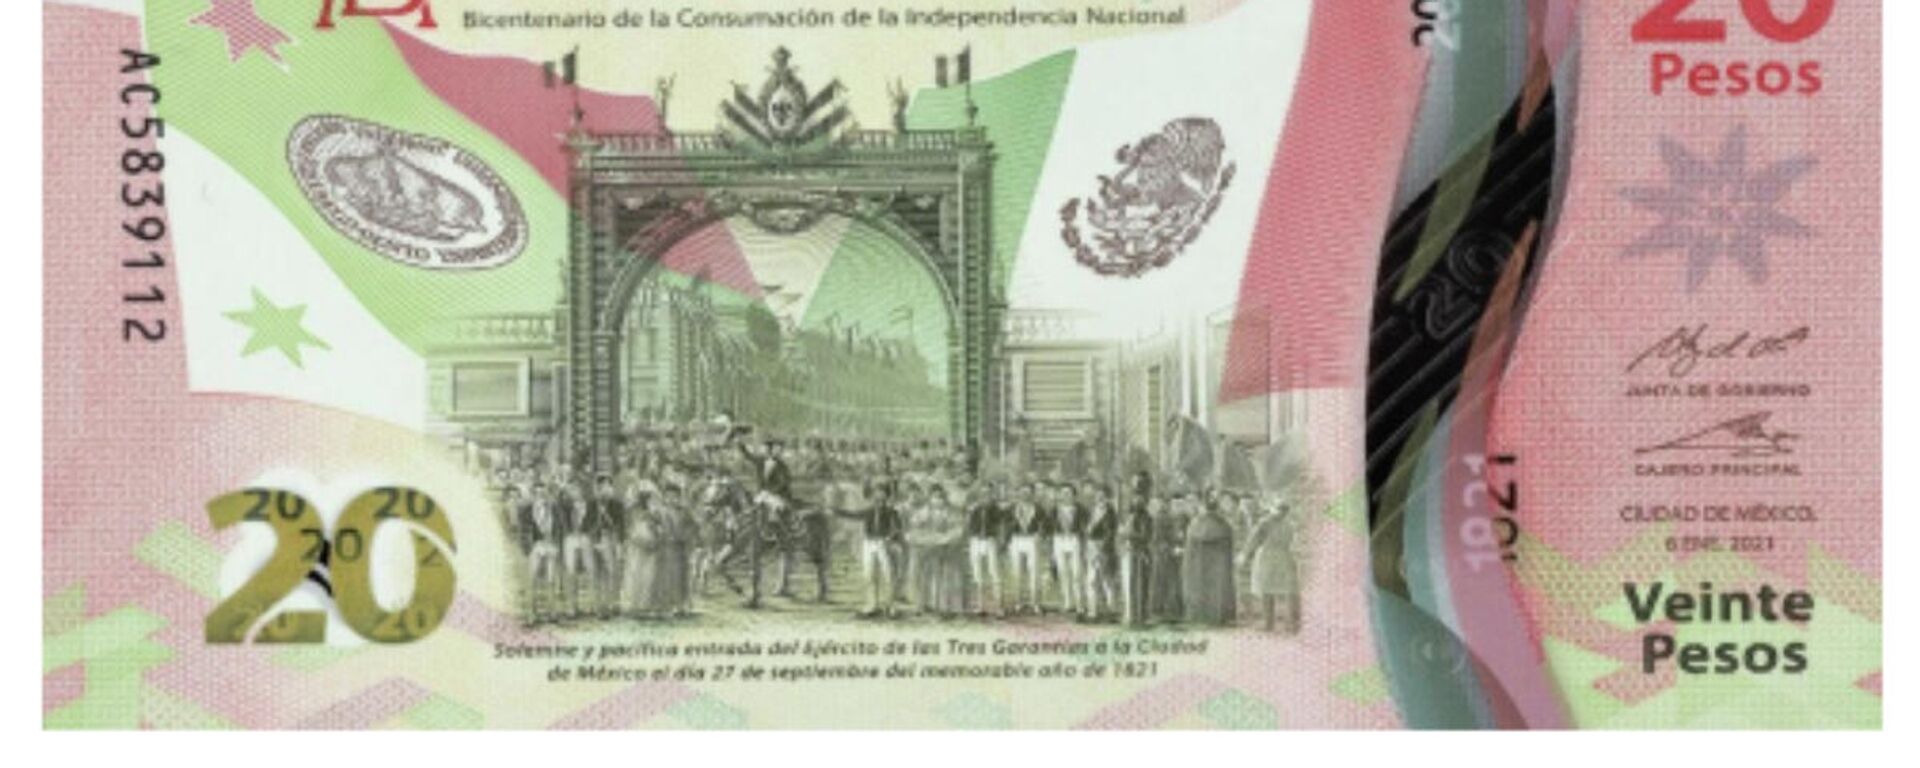 Nuevo billete de 20 pesos en México - Sputnik Mundo, 1920, 24.09.2021